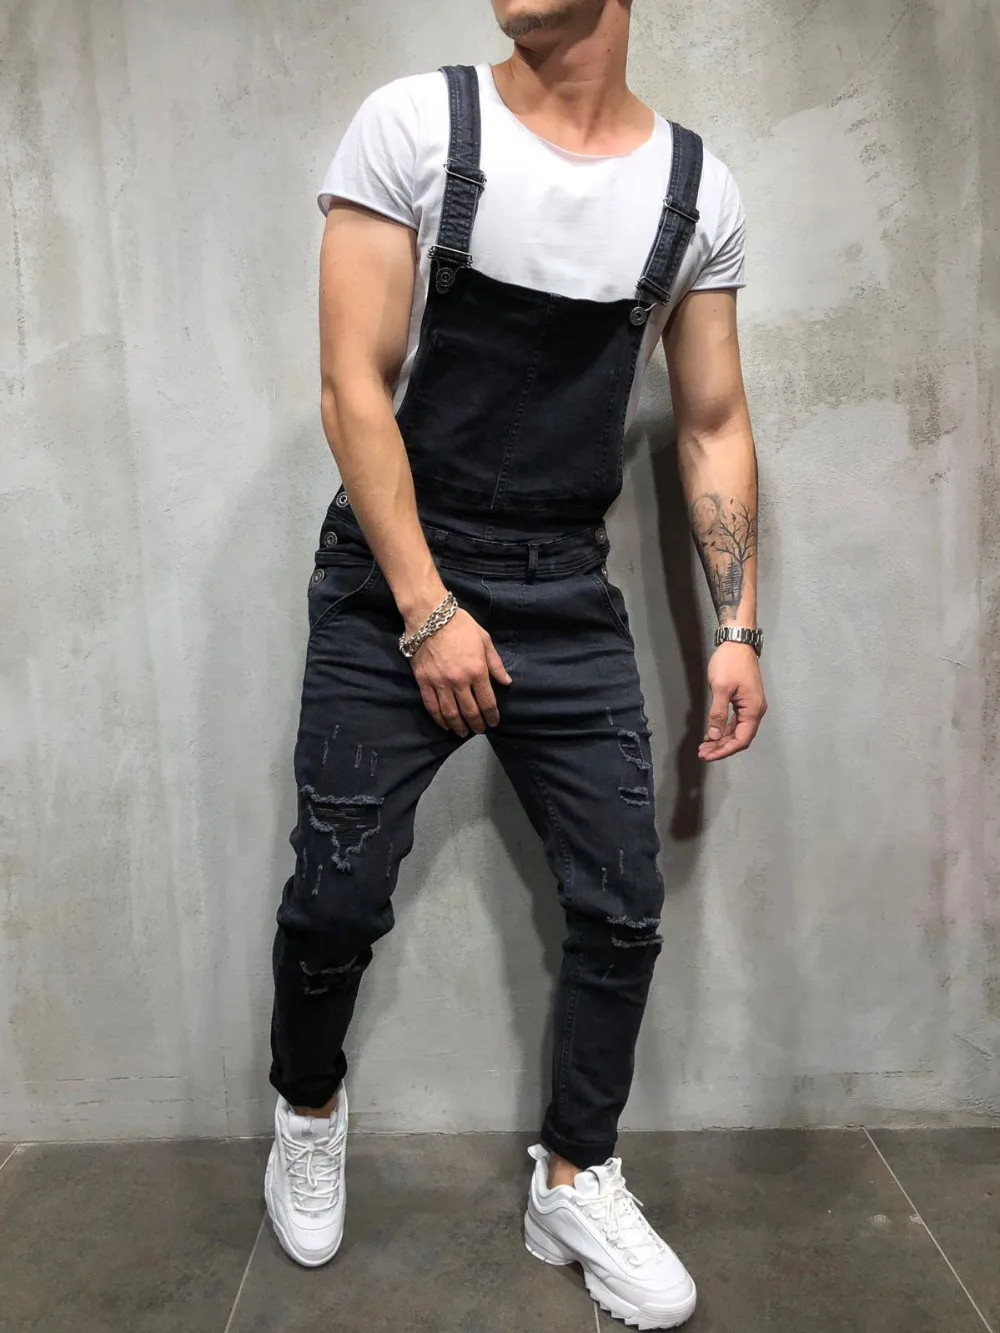 REPPUNK 2019 новые модные мужские рваные джинсы уличные рваные дырявые джинсовые комбинезоны для мужчин комбинезон брюки размер m-xxxl